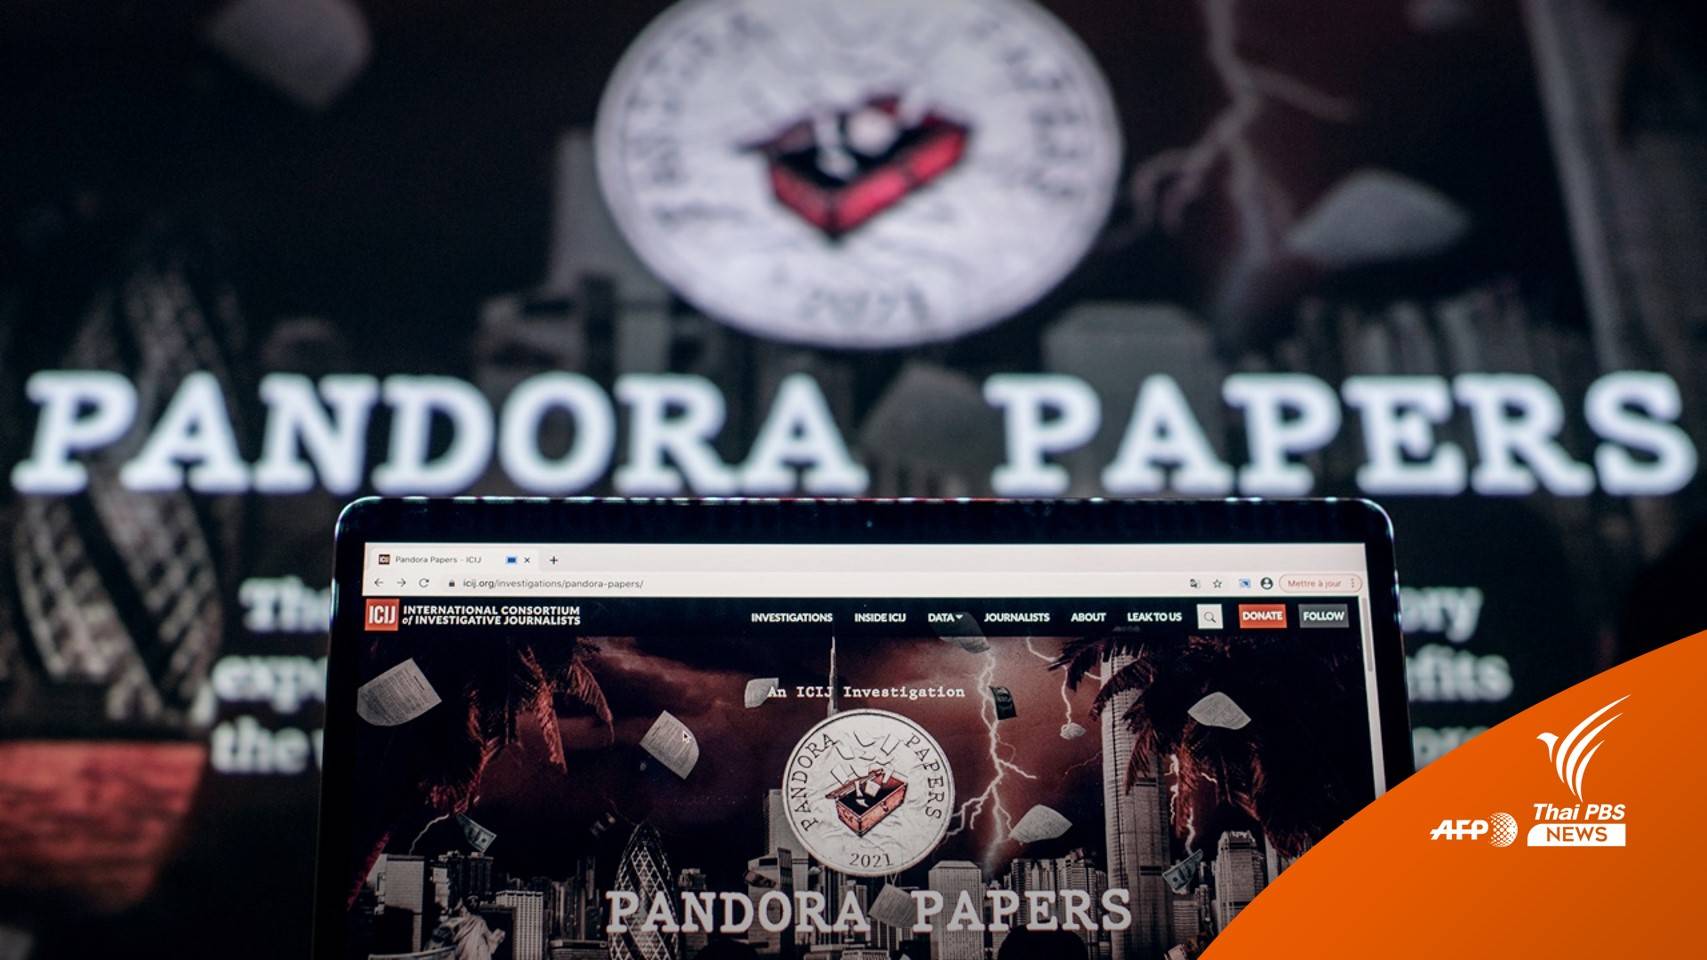 Pandora Papers เอกสารเปิดโปงรอบใหม่ใหญ่กว่าเดิม